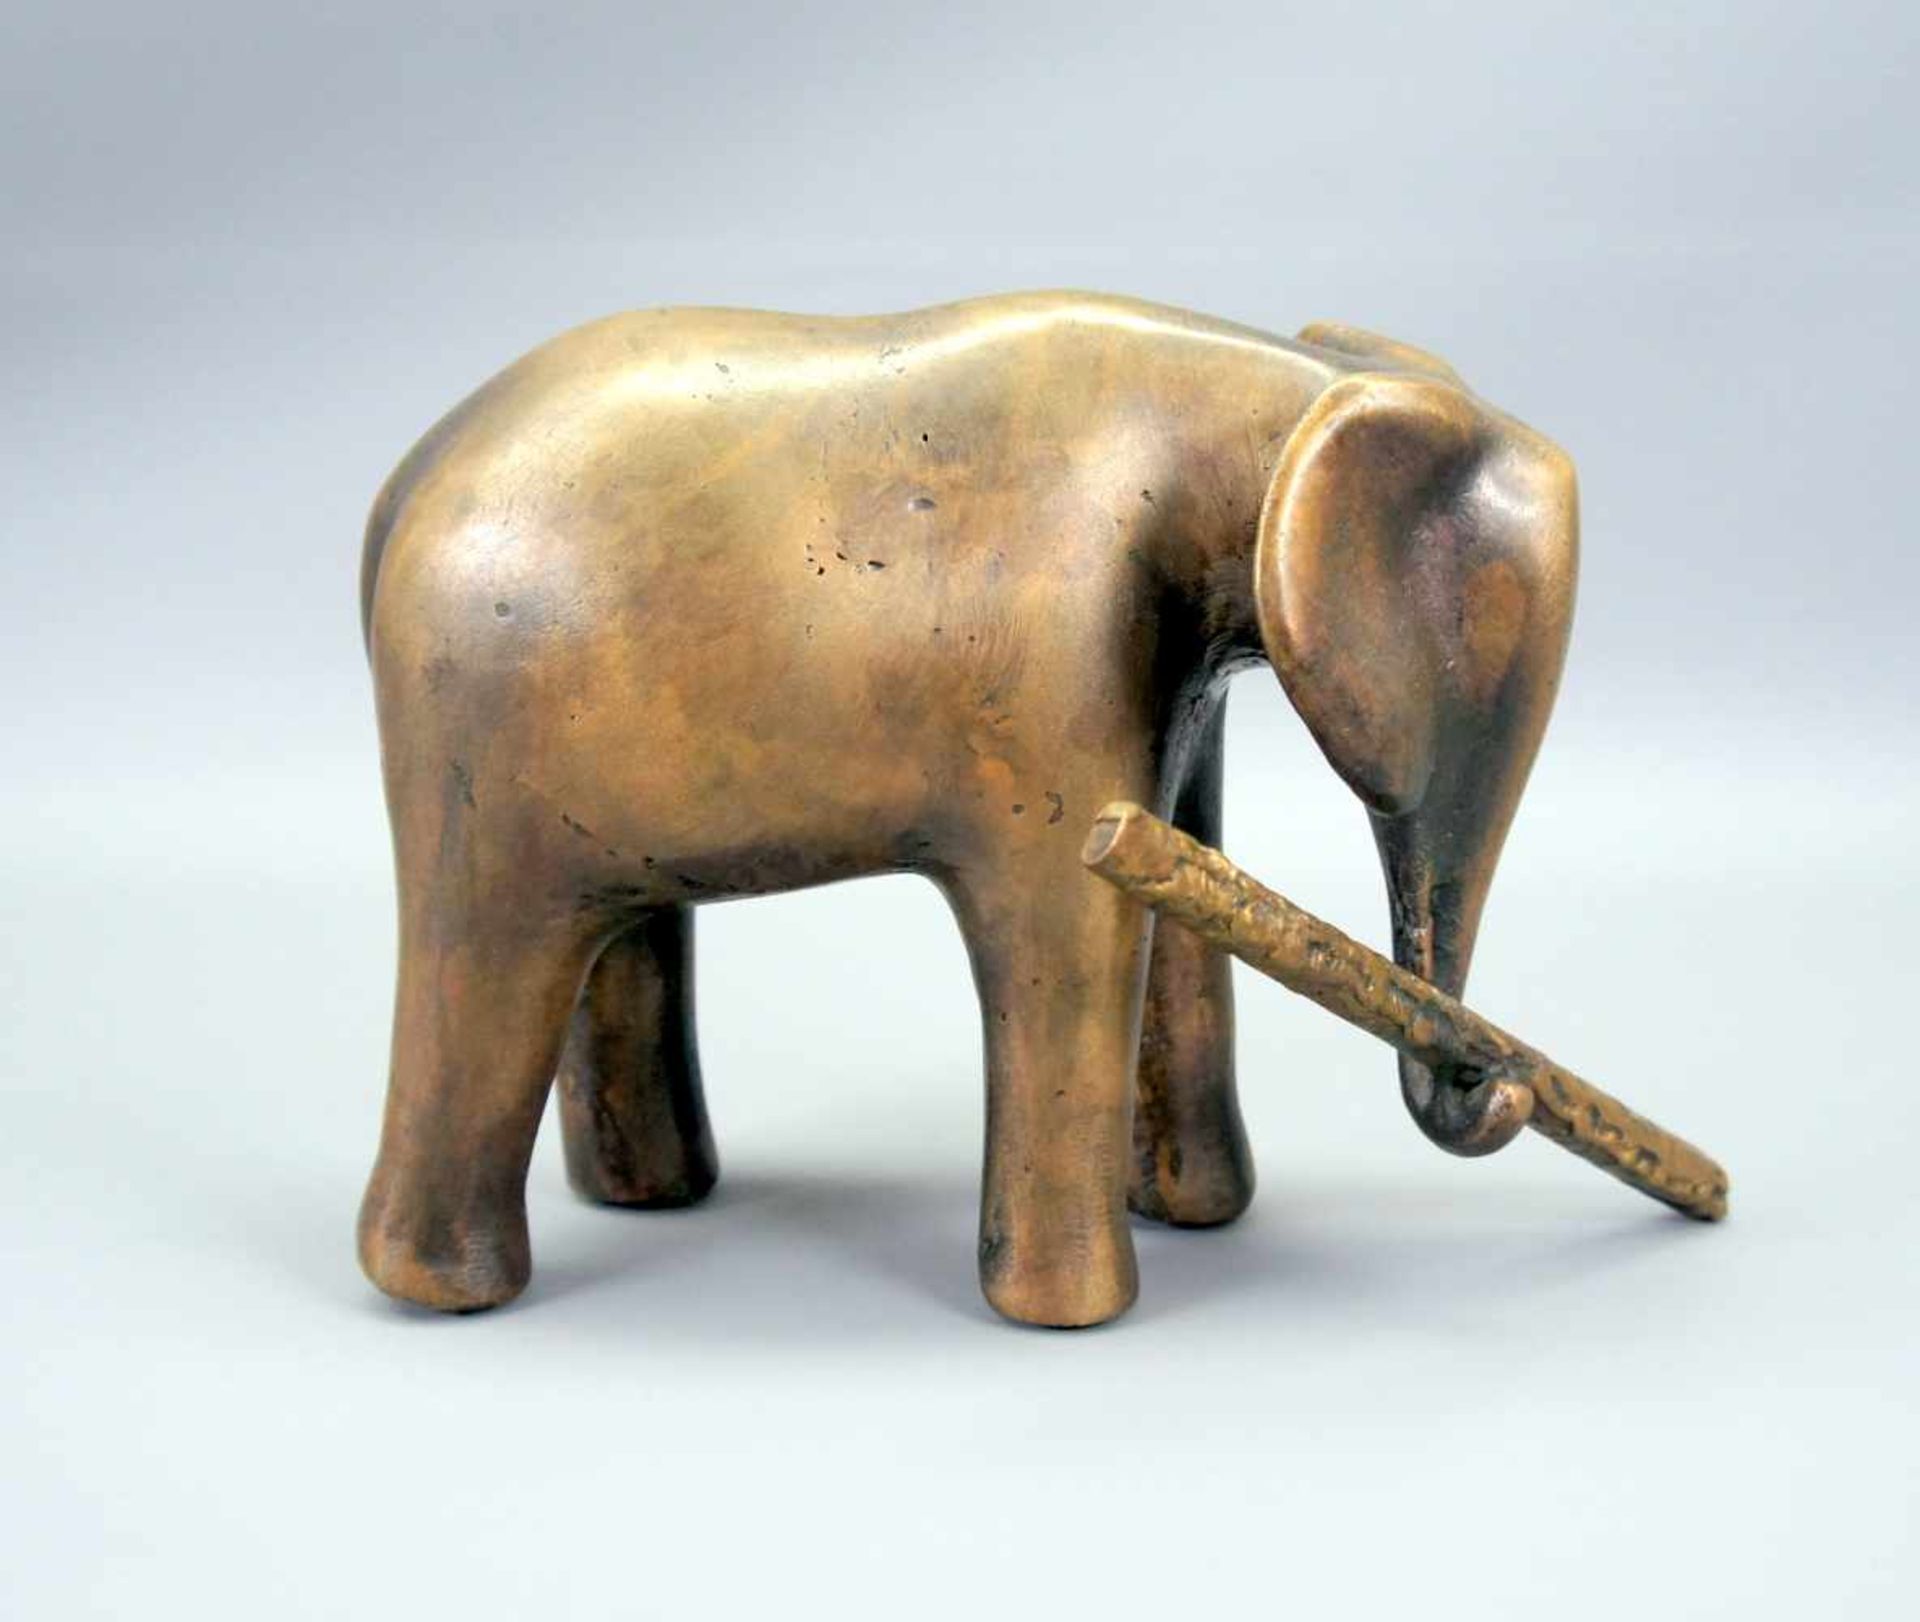 Elefant mit AstBronze, goldbraun patiniert. Vereinfacht dargestellter Elefant, einen Ast mit